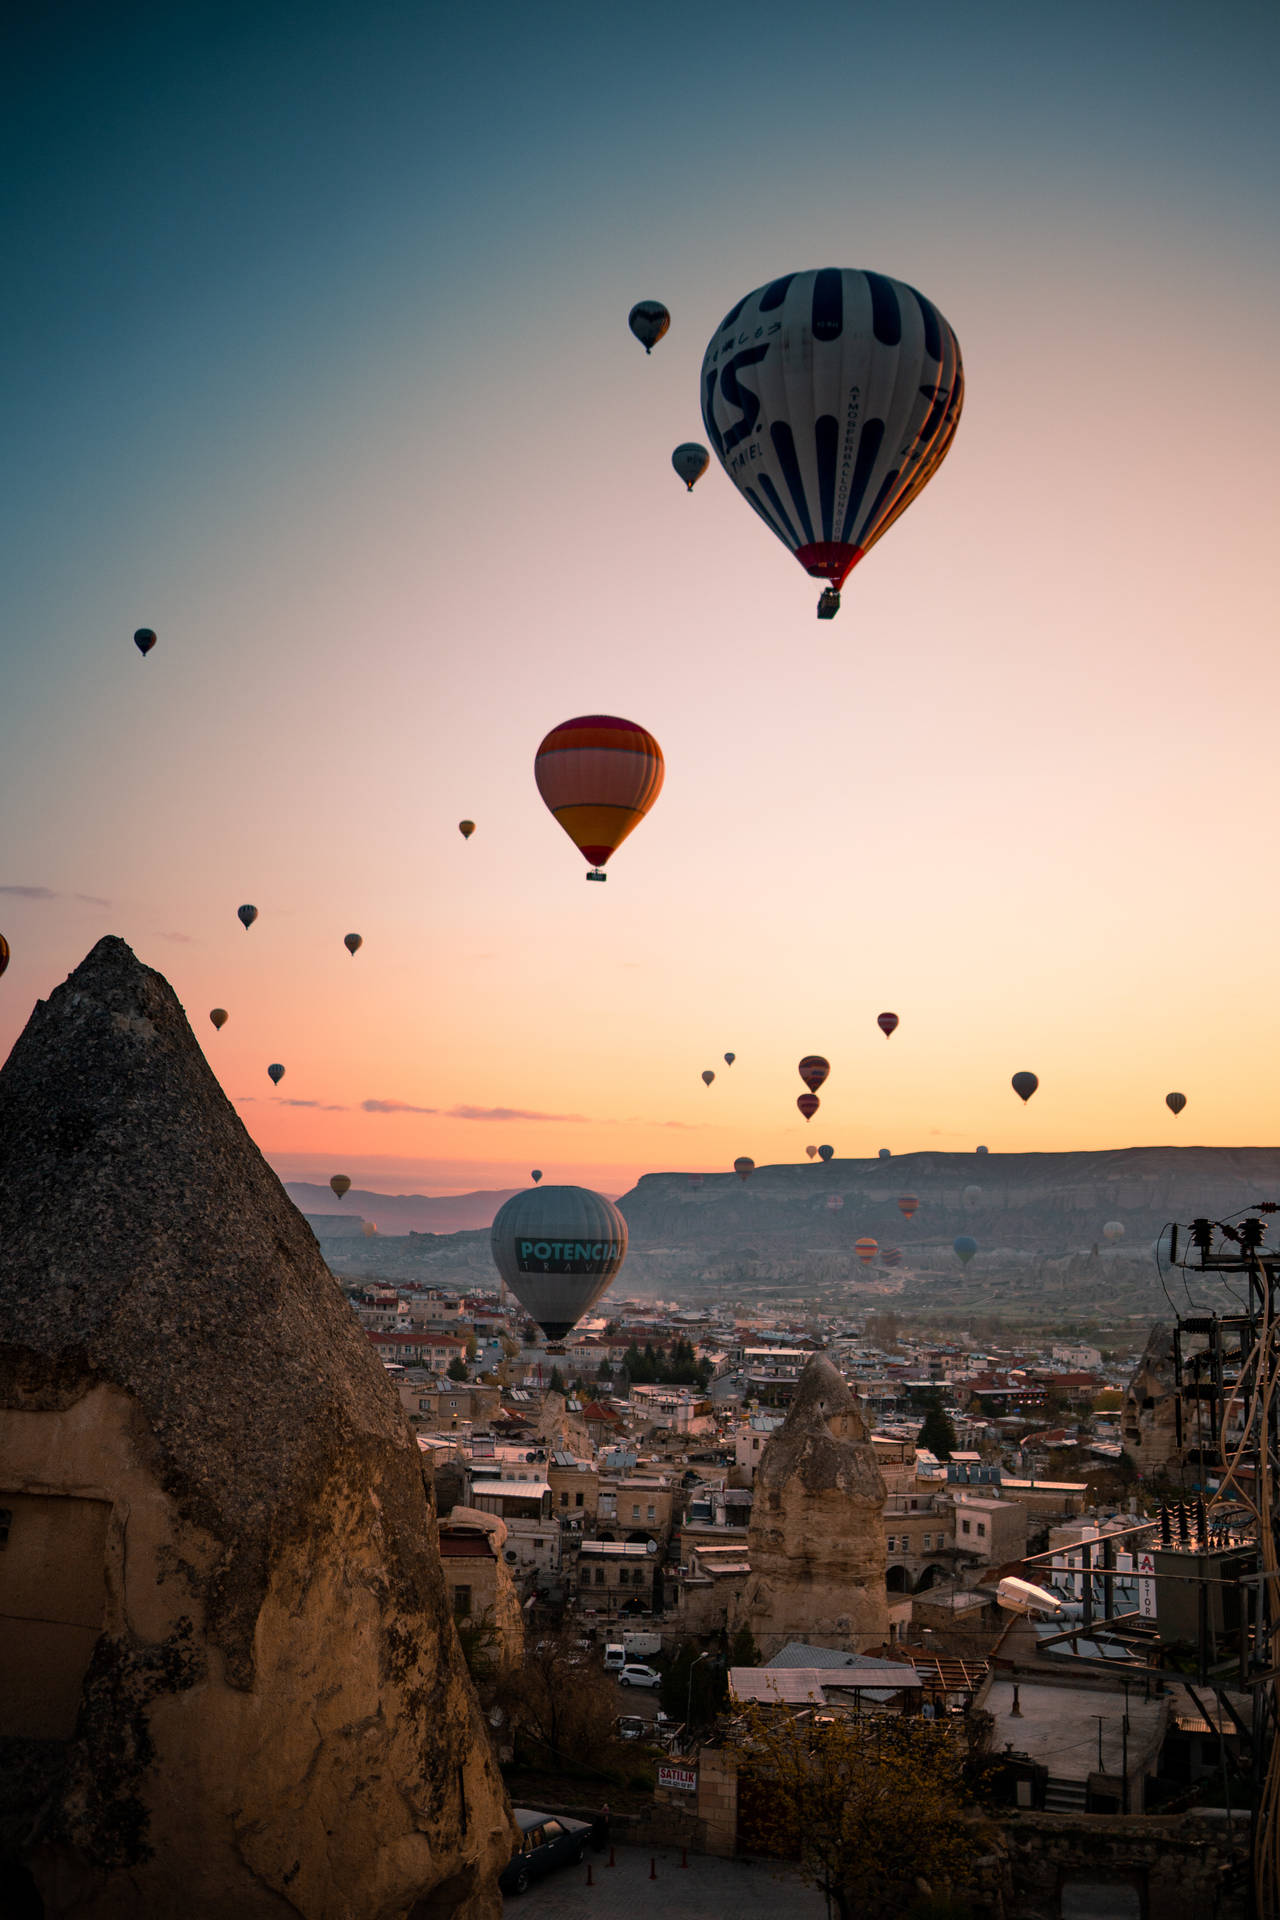 Cappadociaballons Am Himmel Wallpaper